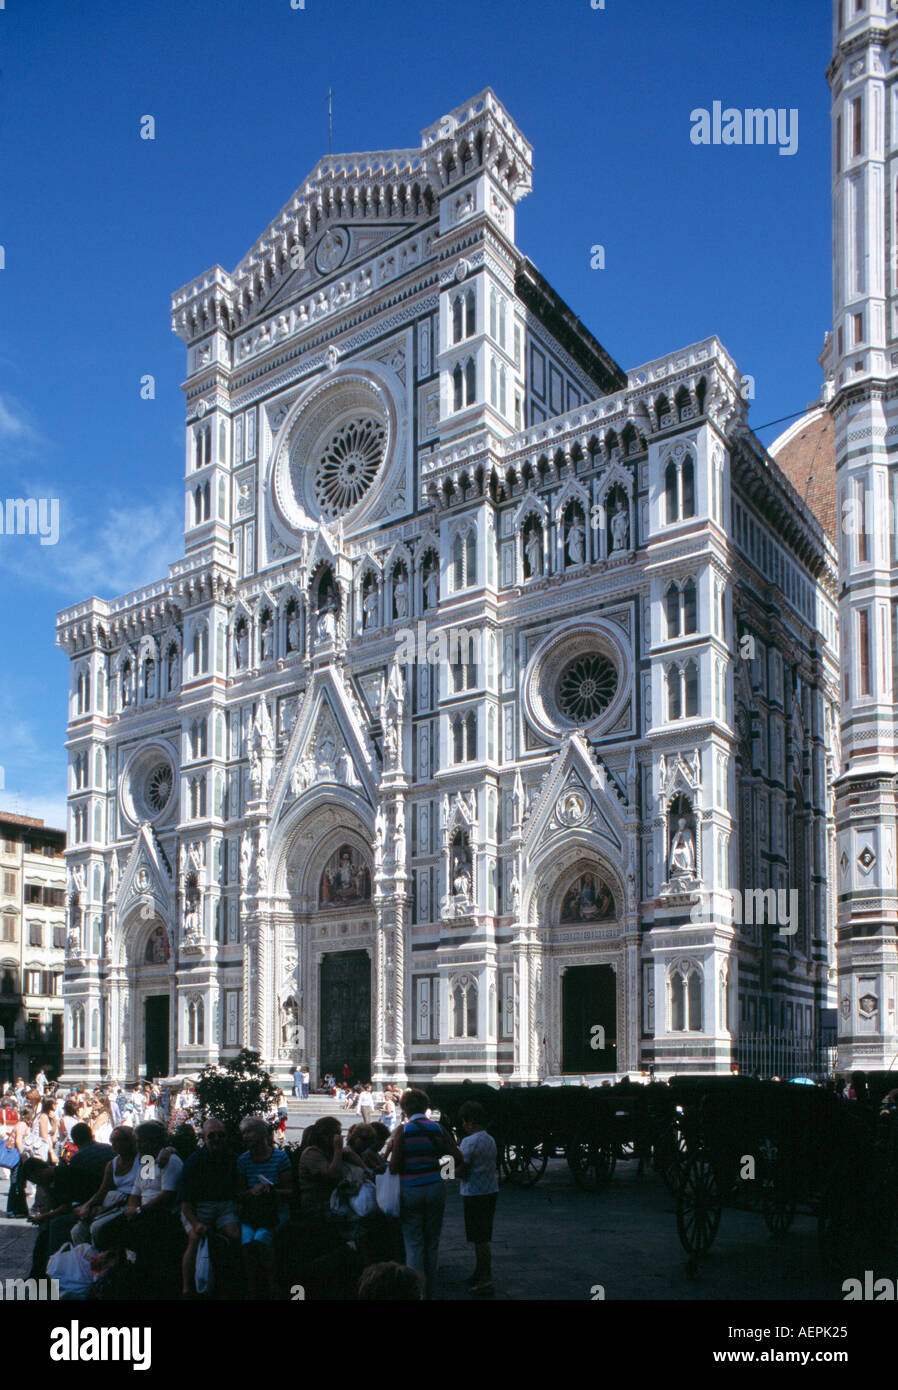 Firenze / Florenz, il Duomo di Santa Maria del Fiore / Dom, Fassade Foto Stock